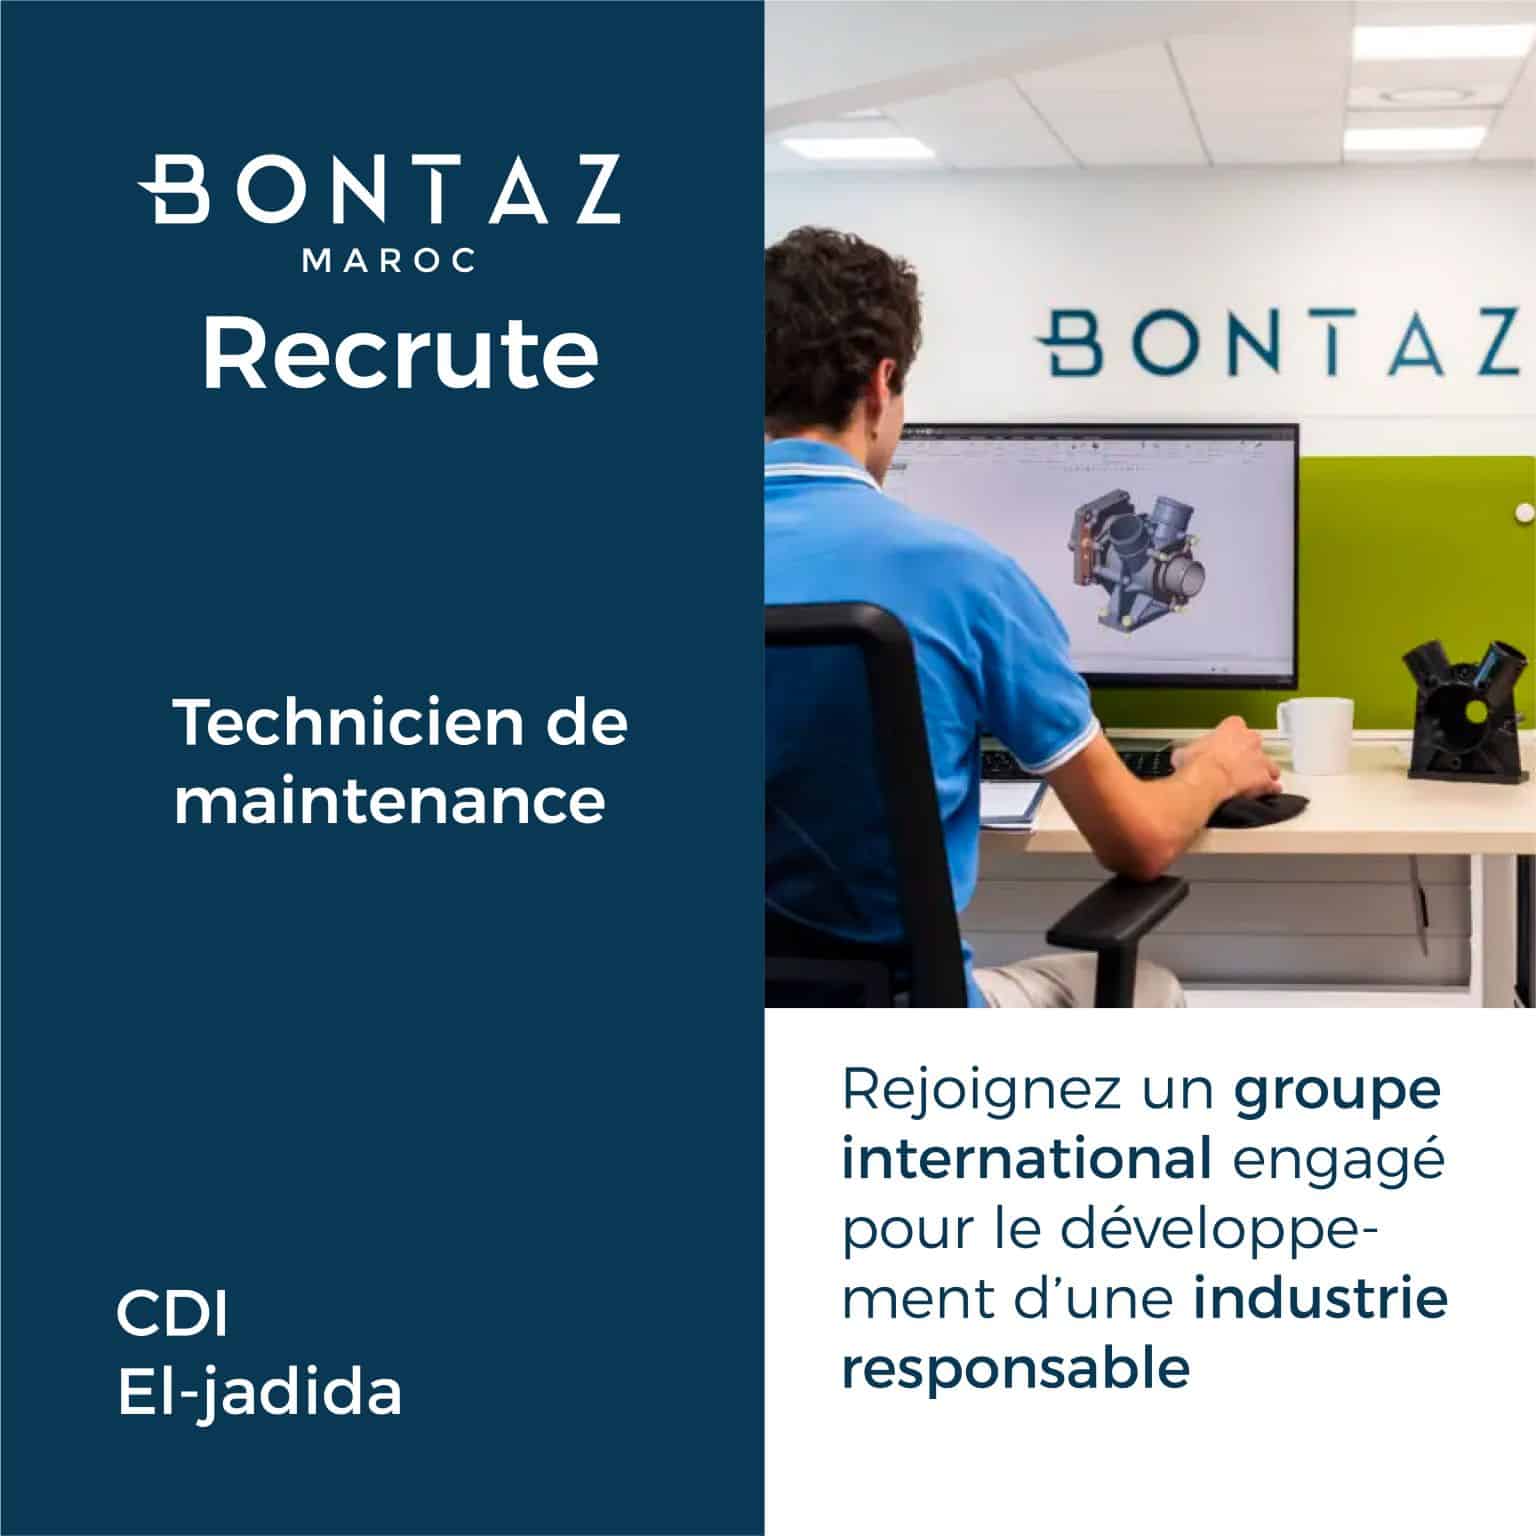 Bontaz Maroc recrute des Techniciens Maintenance